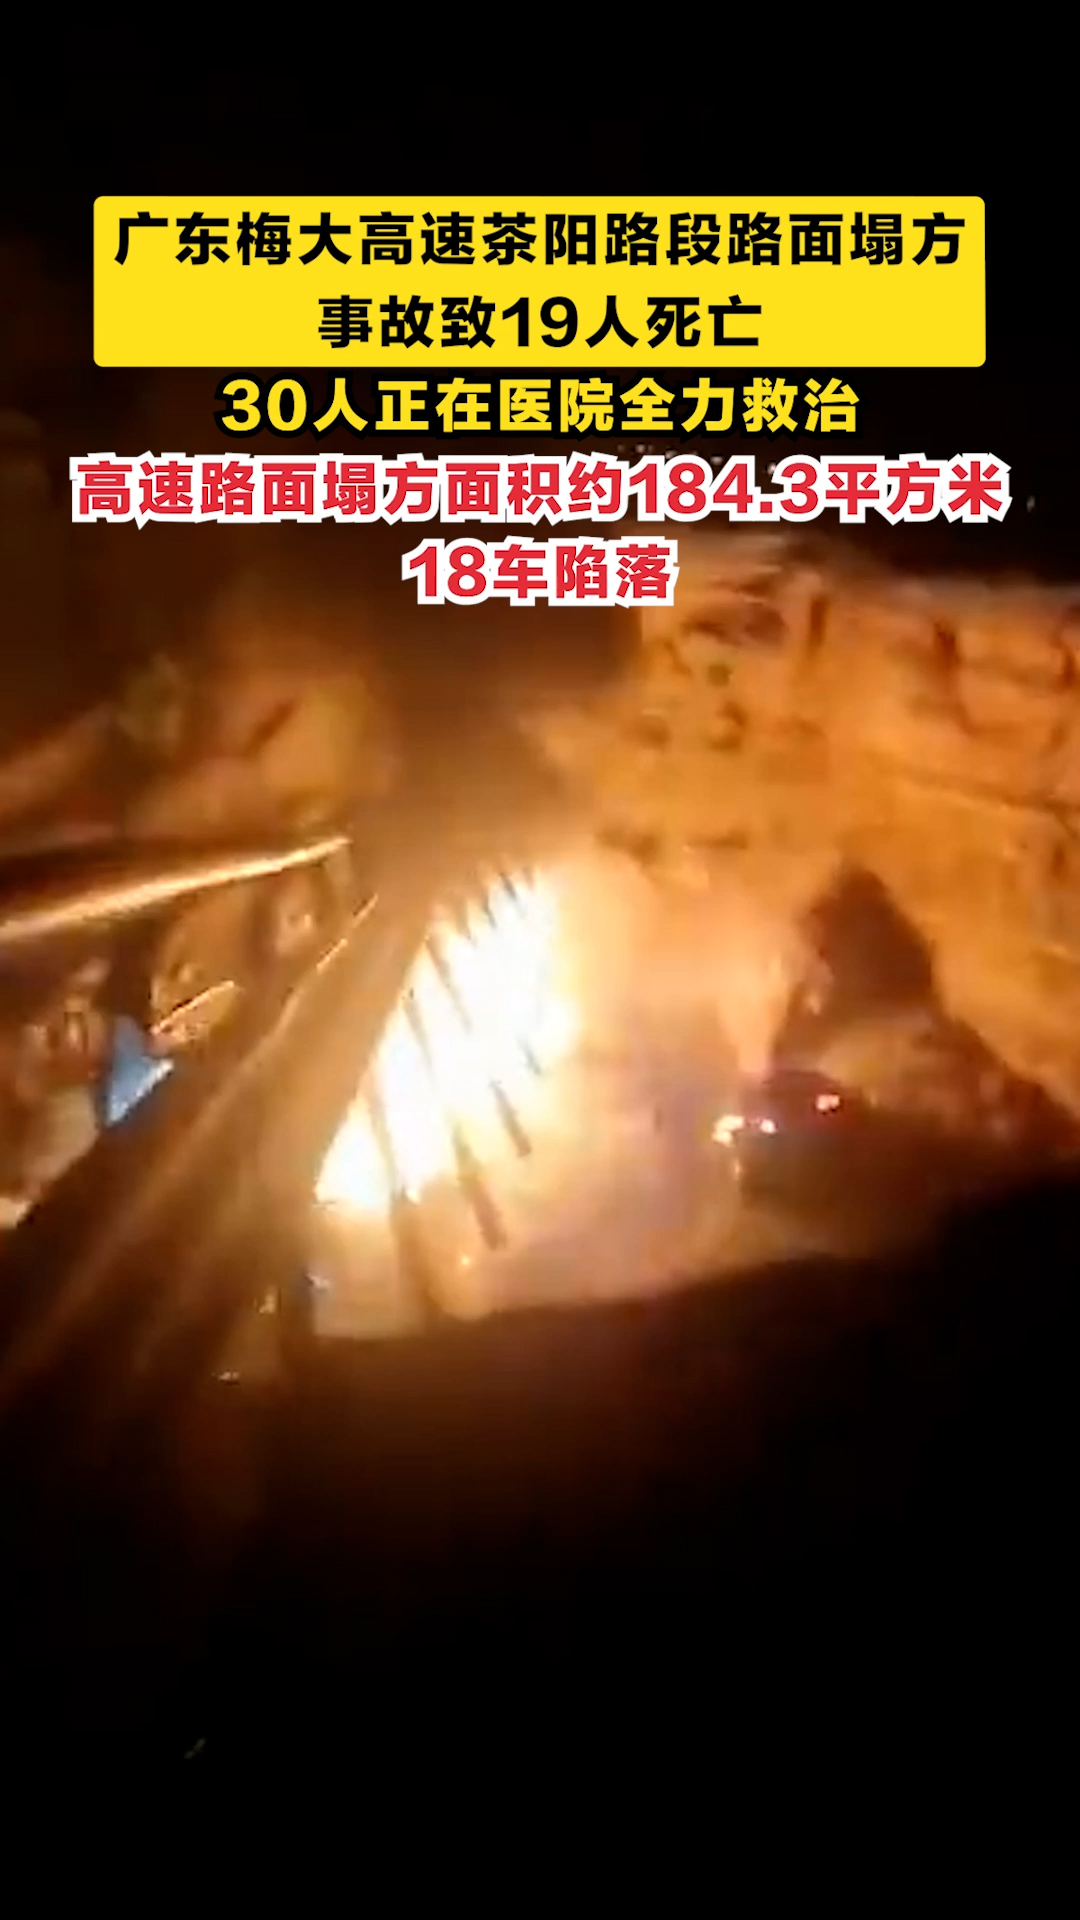 广东梅大高速茶阳路段路面塌方事故致19人死亡，30人正在医院全力救治！高速路面塌方面积约184.3平方米，18车陷落